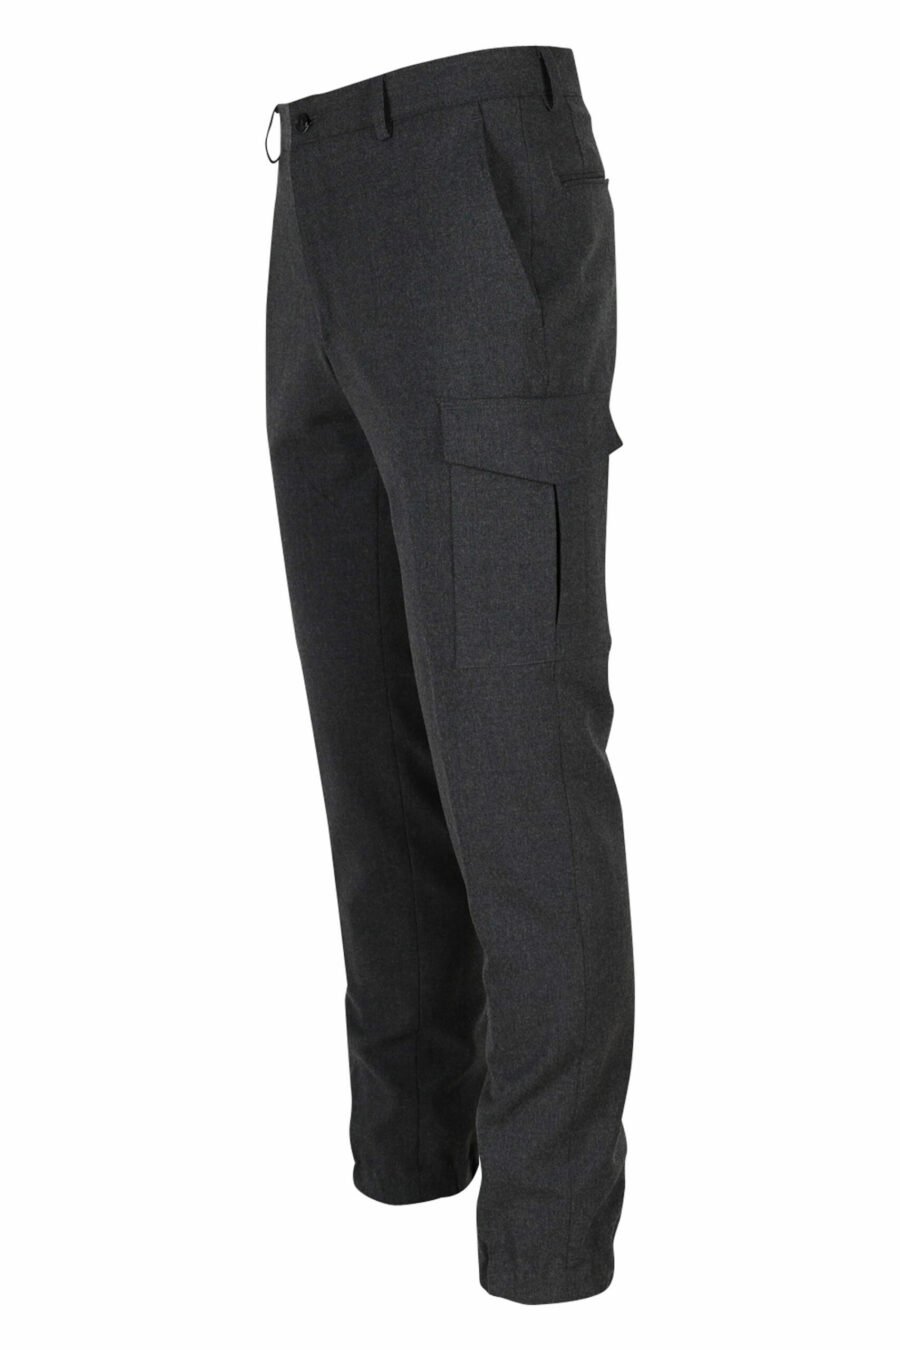 Pantalon de tailleur gris - 4062226397018 13 échelonné